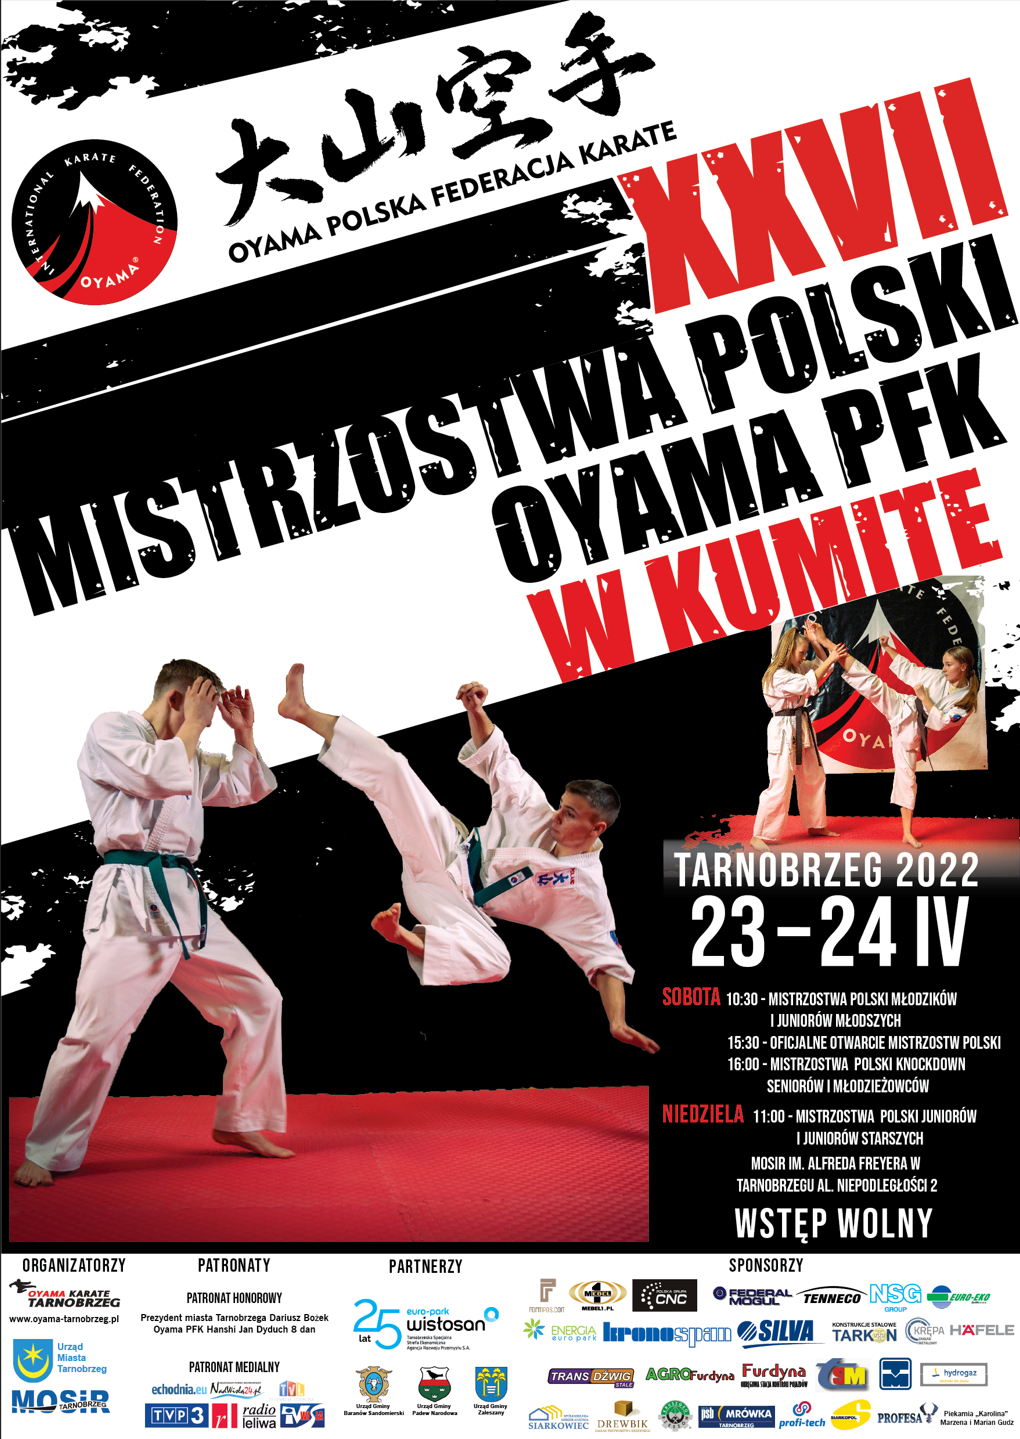 Mistrzostwa Polski Oyama PFK | KNOCKDOWN